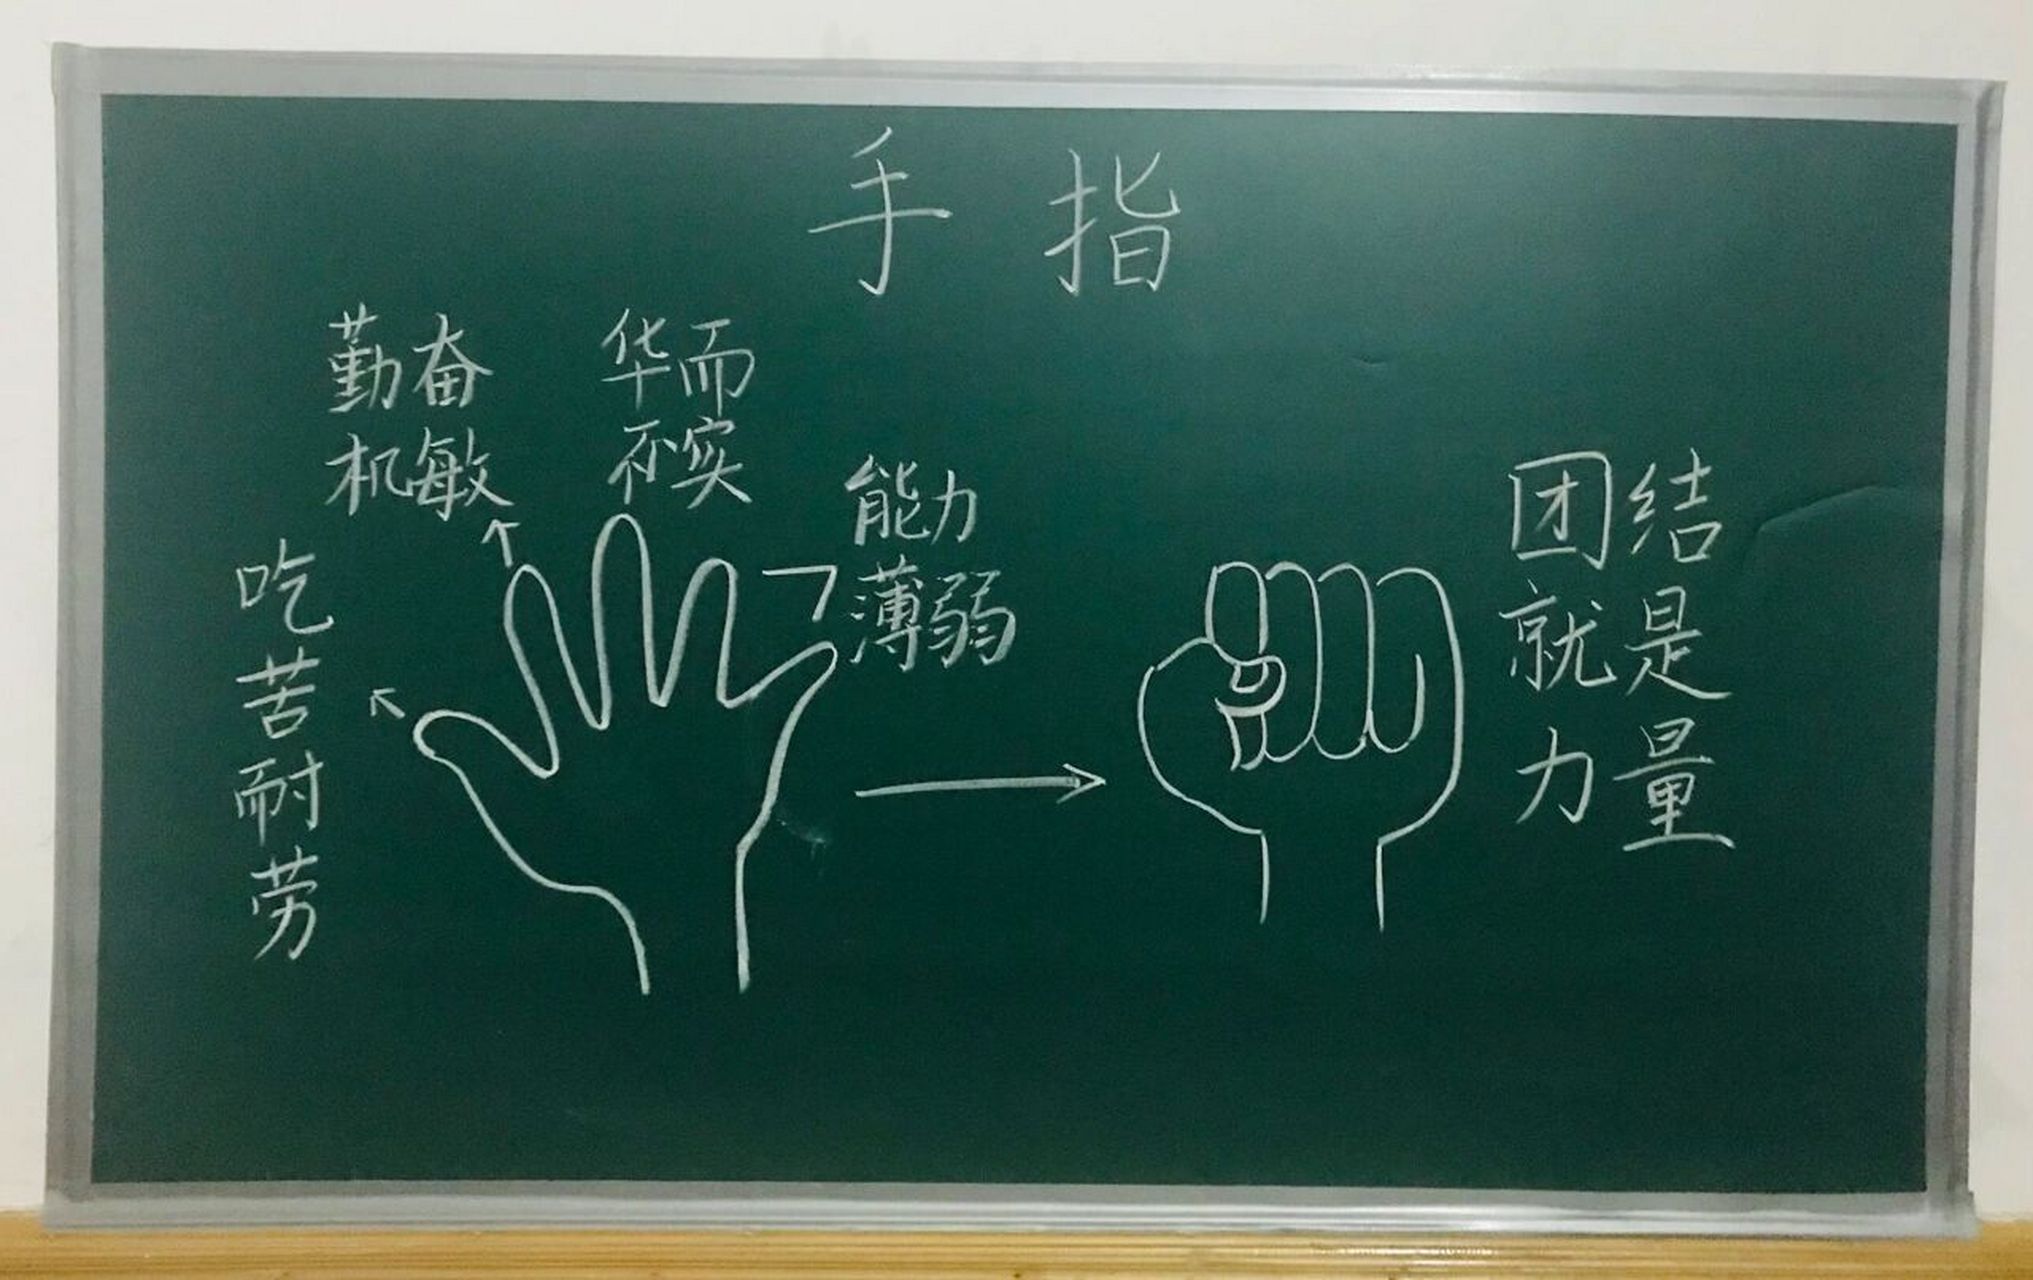 《手指》课文板书图片